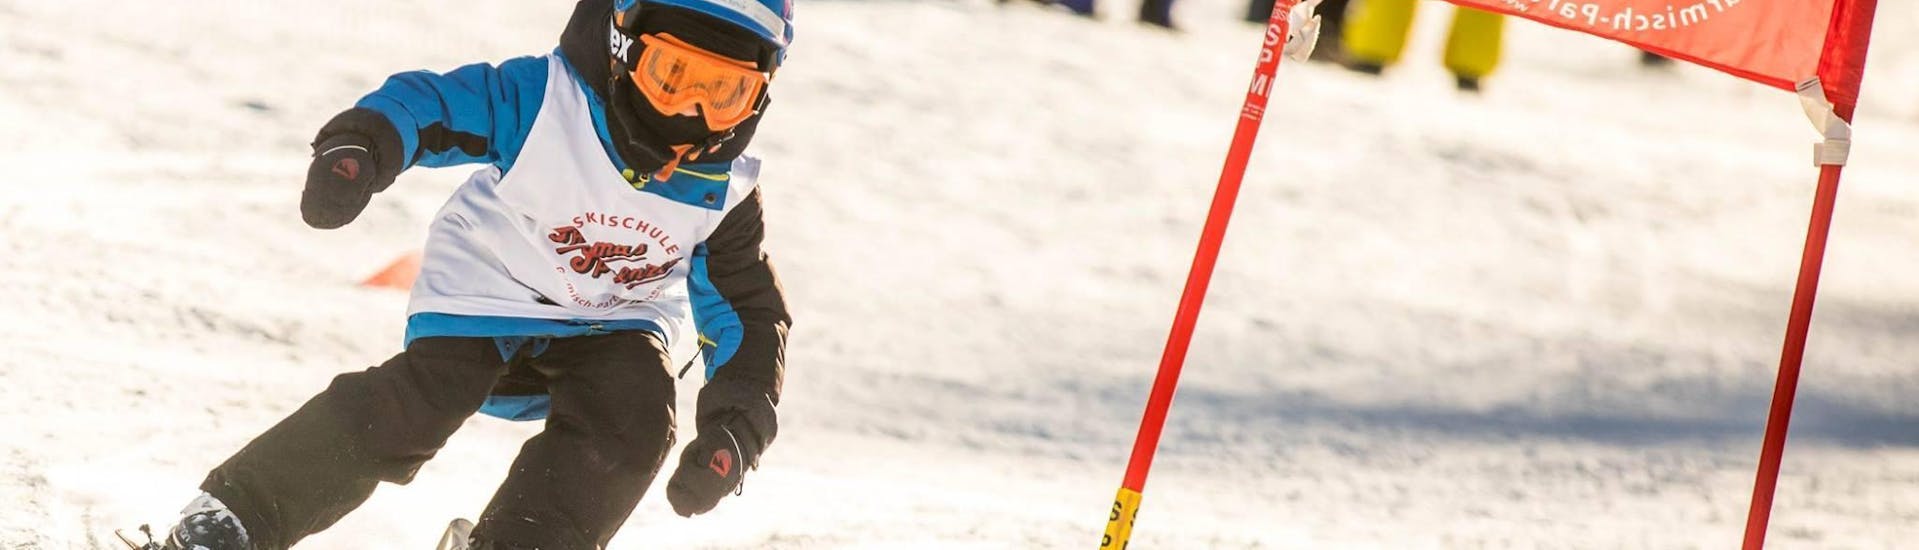 Een jong kind racet over een racebaan als onderdeel van de kinderskilessen (4-12 jaar) - alle niveaus bij de skischool Skischule Thomas Sprenzel in het skigebied Garmisch-Classic.